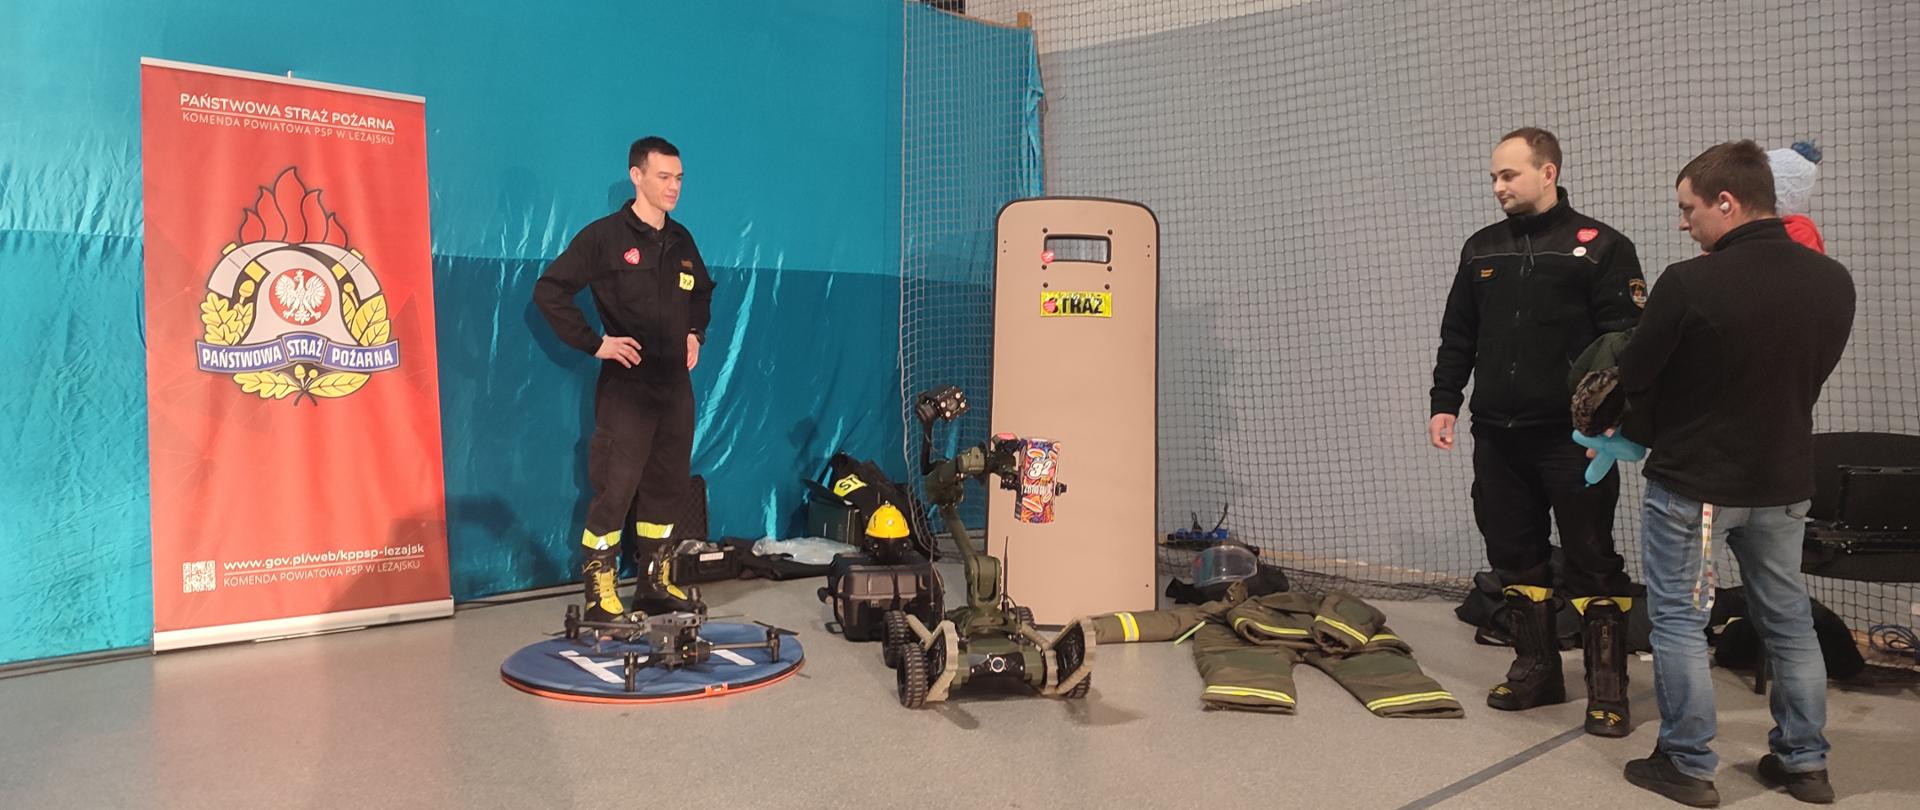 Na zdjęciu widzimy strażaków prezentujących sprzęt, między innymi robota, tarcze balistyczną. W tle widzimy baner Państwowej Straży Pożarnej.